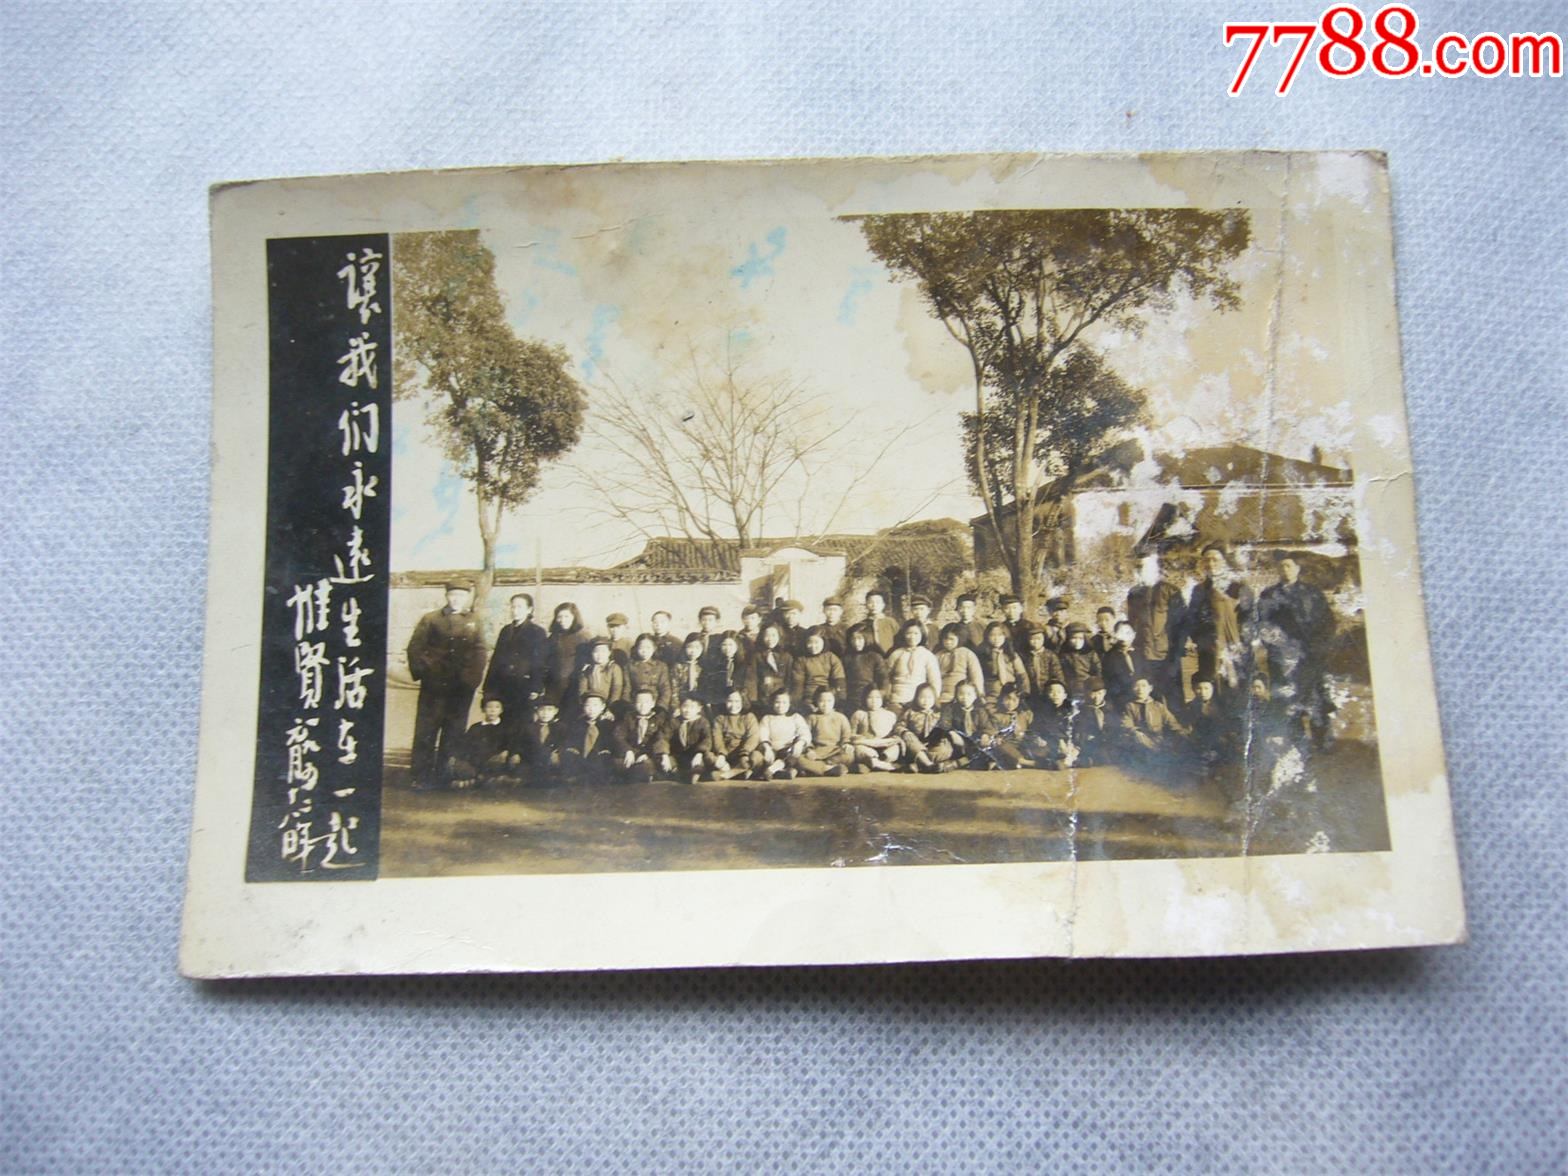 1952年农村集体照